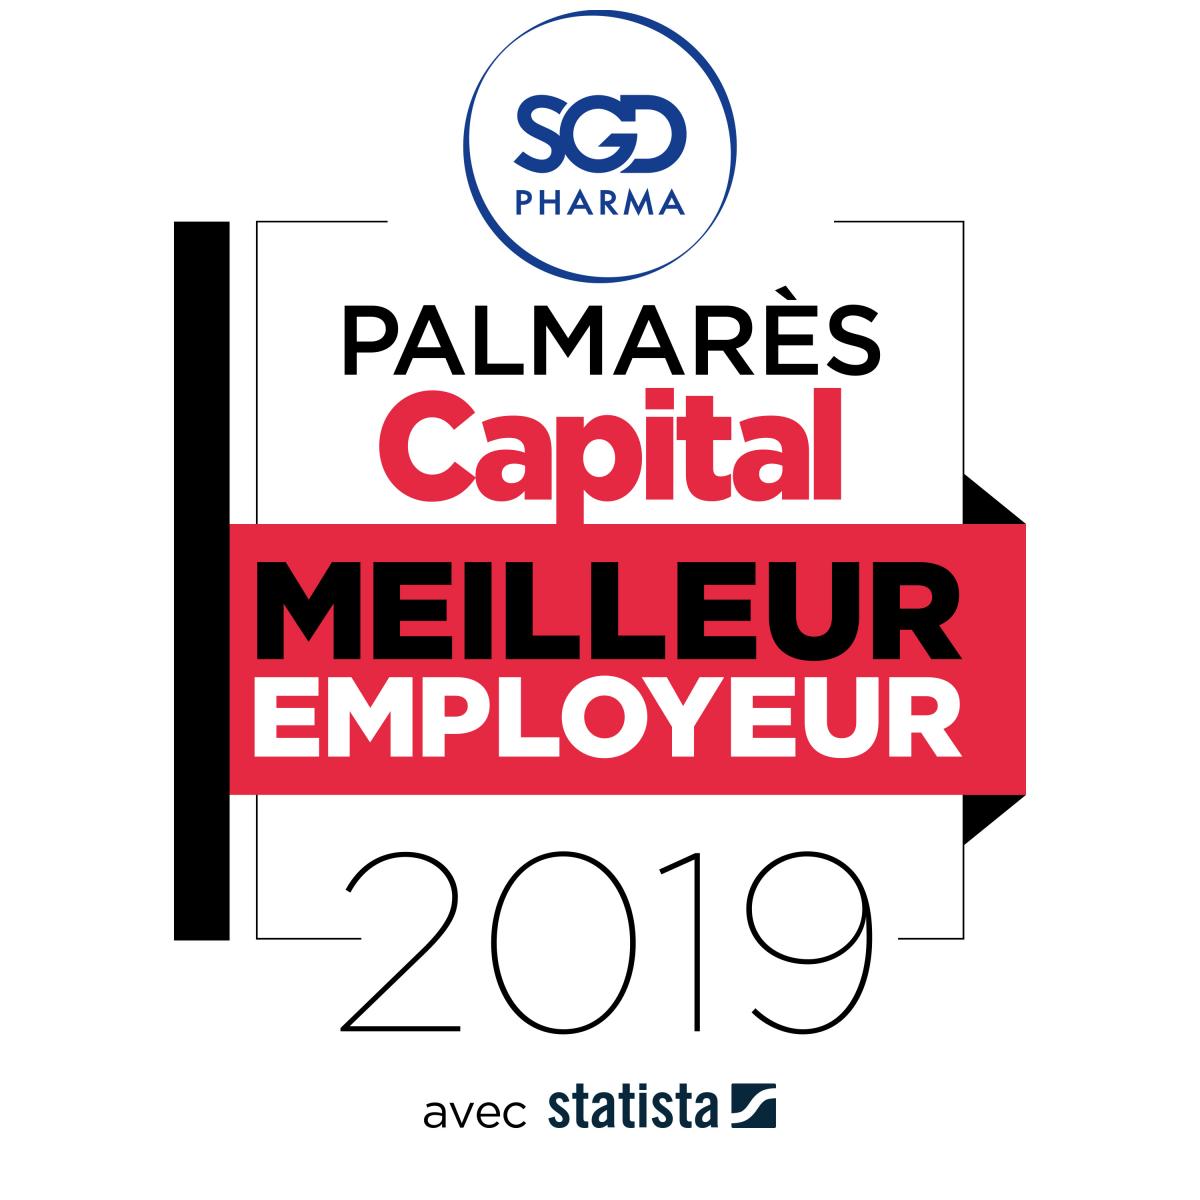 SGD Pharma reçoit le label du Meilleur Employeur de France